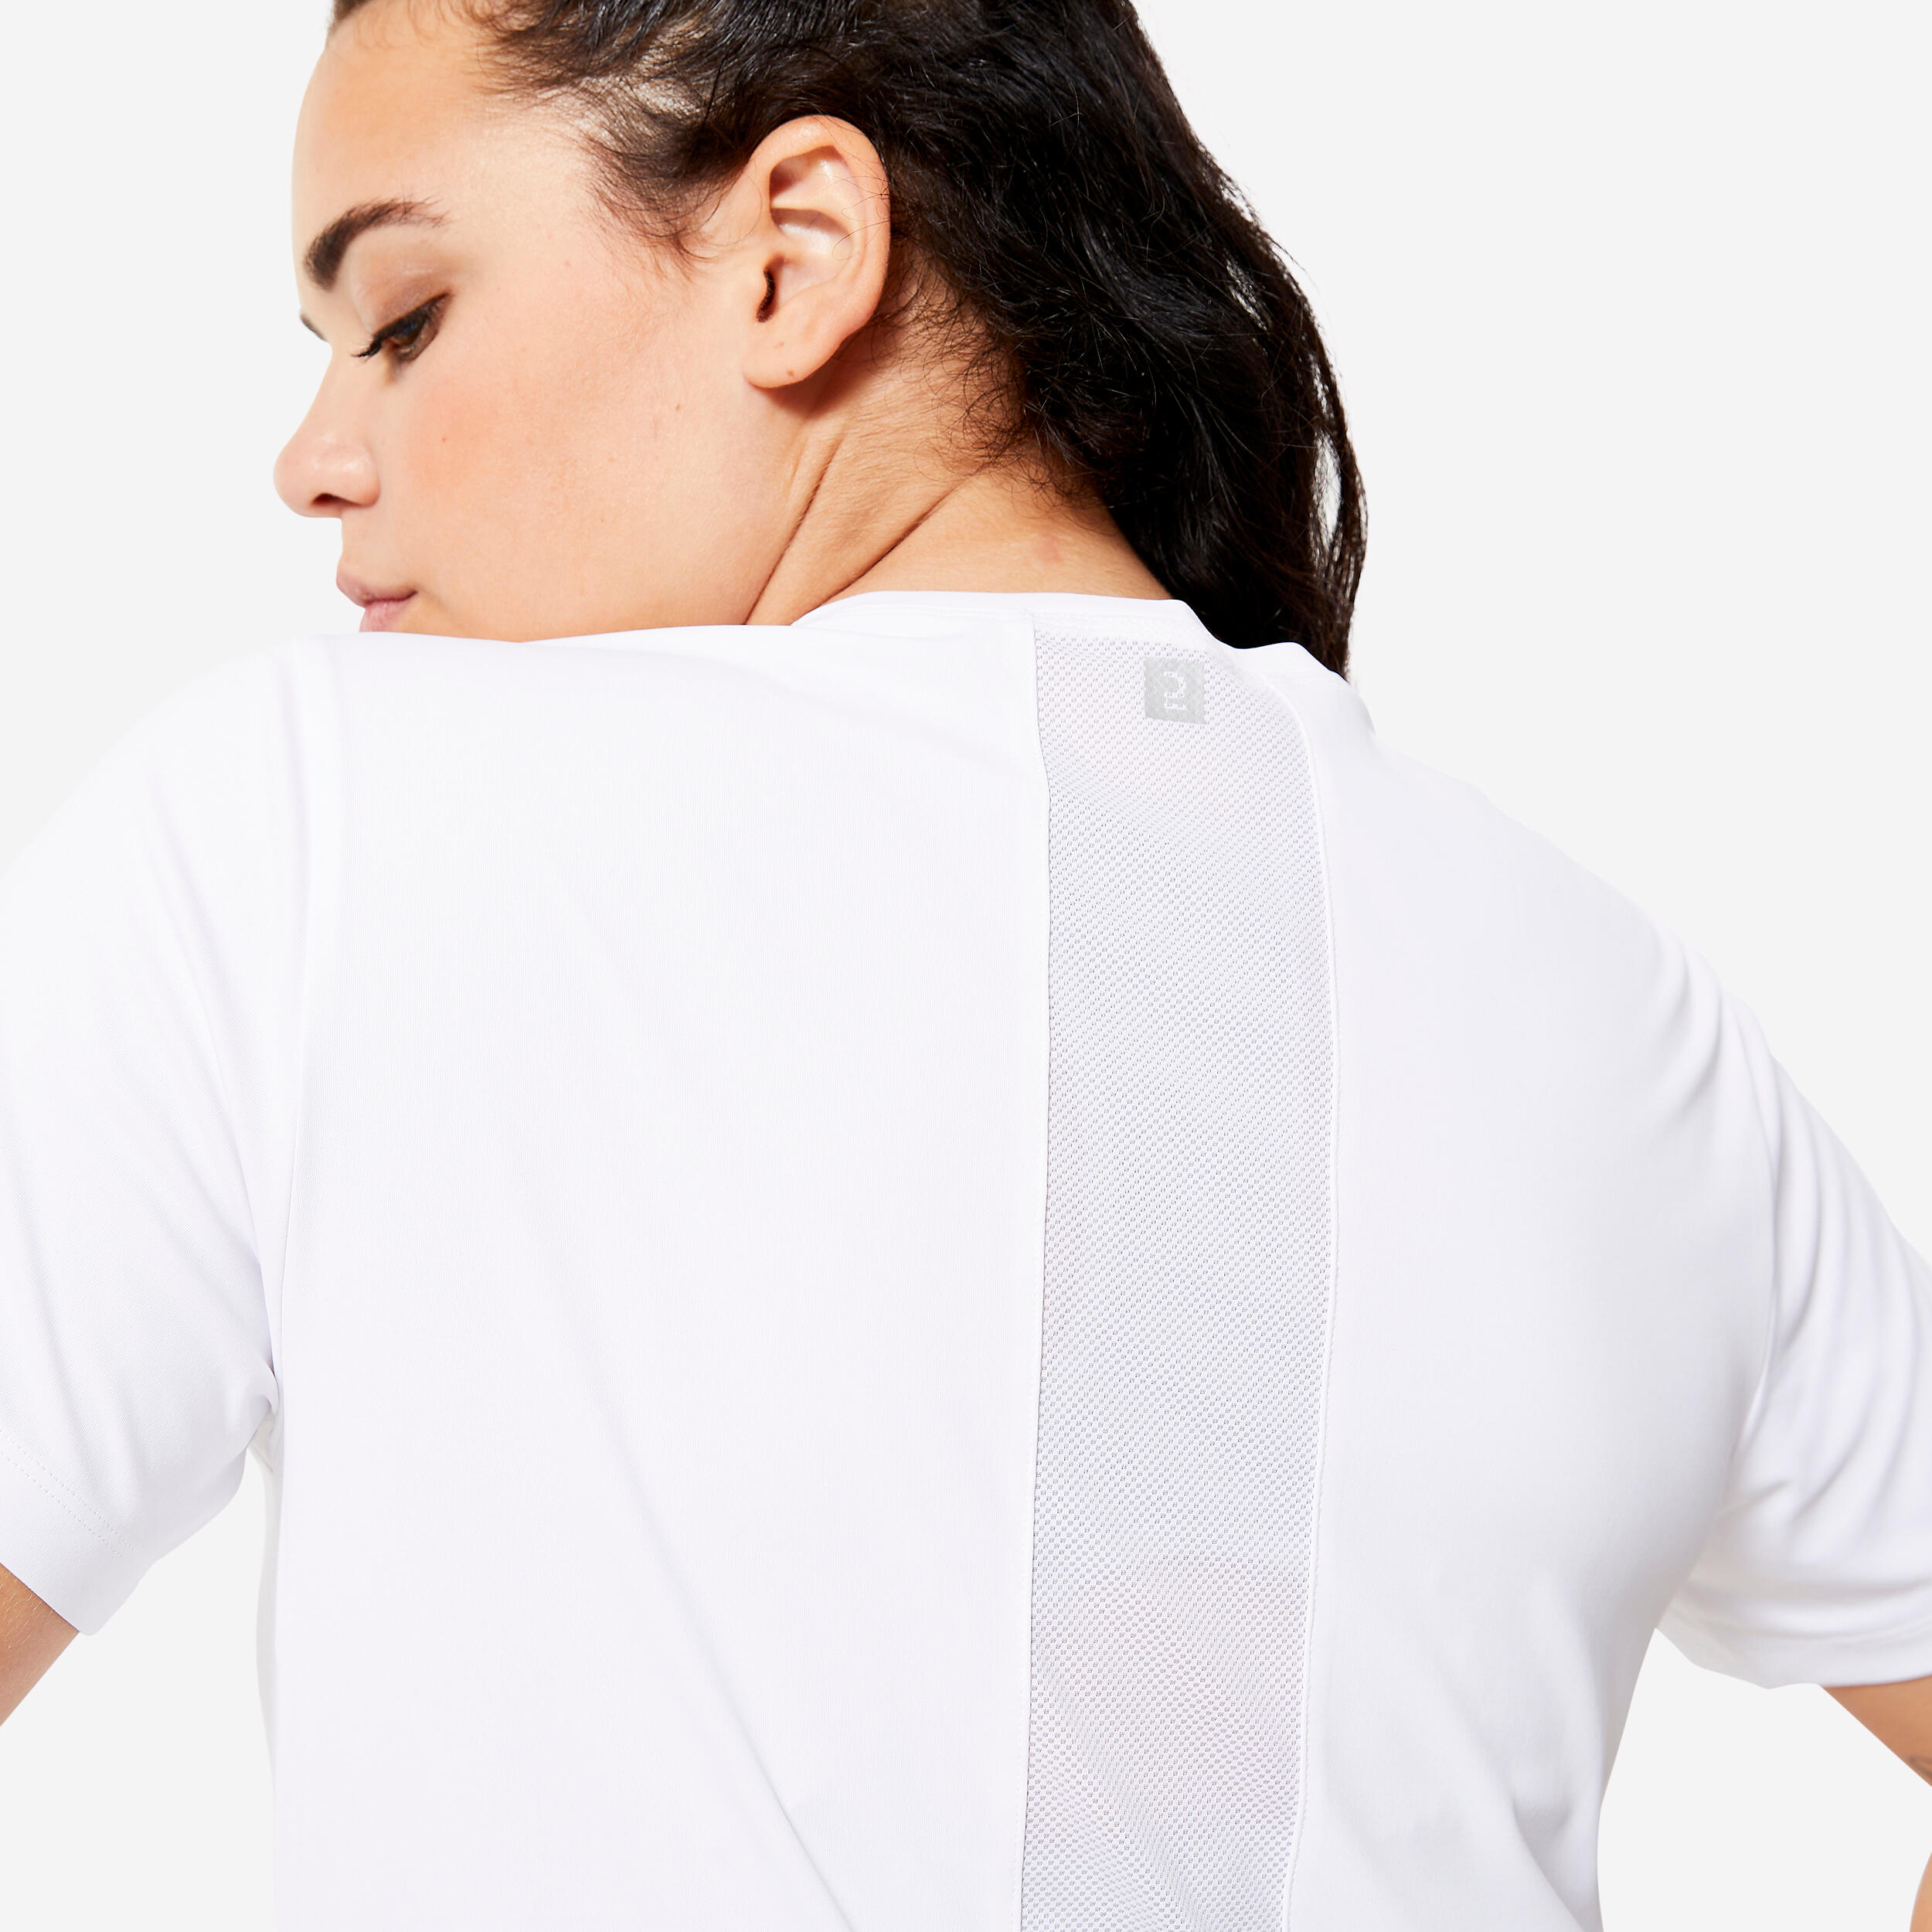 Women's Short-Sleeved Cardio Fitness T-Shirt - White 5/6